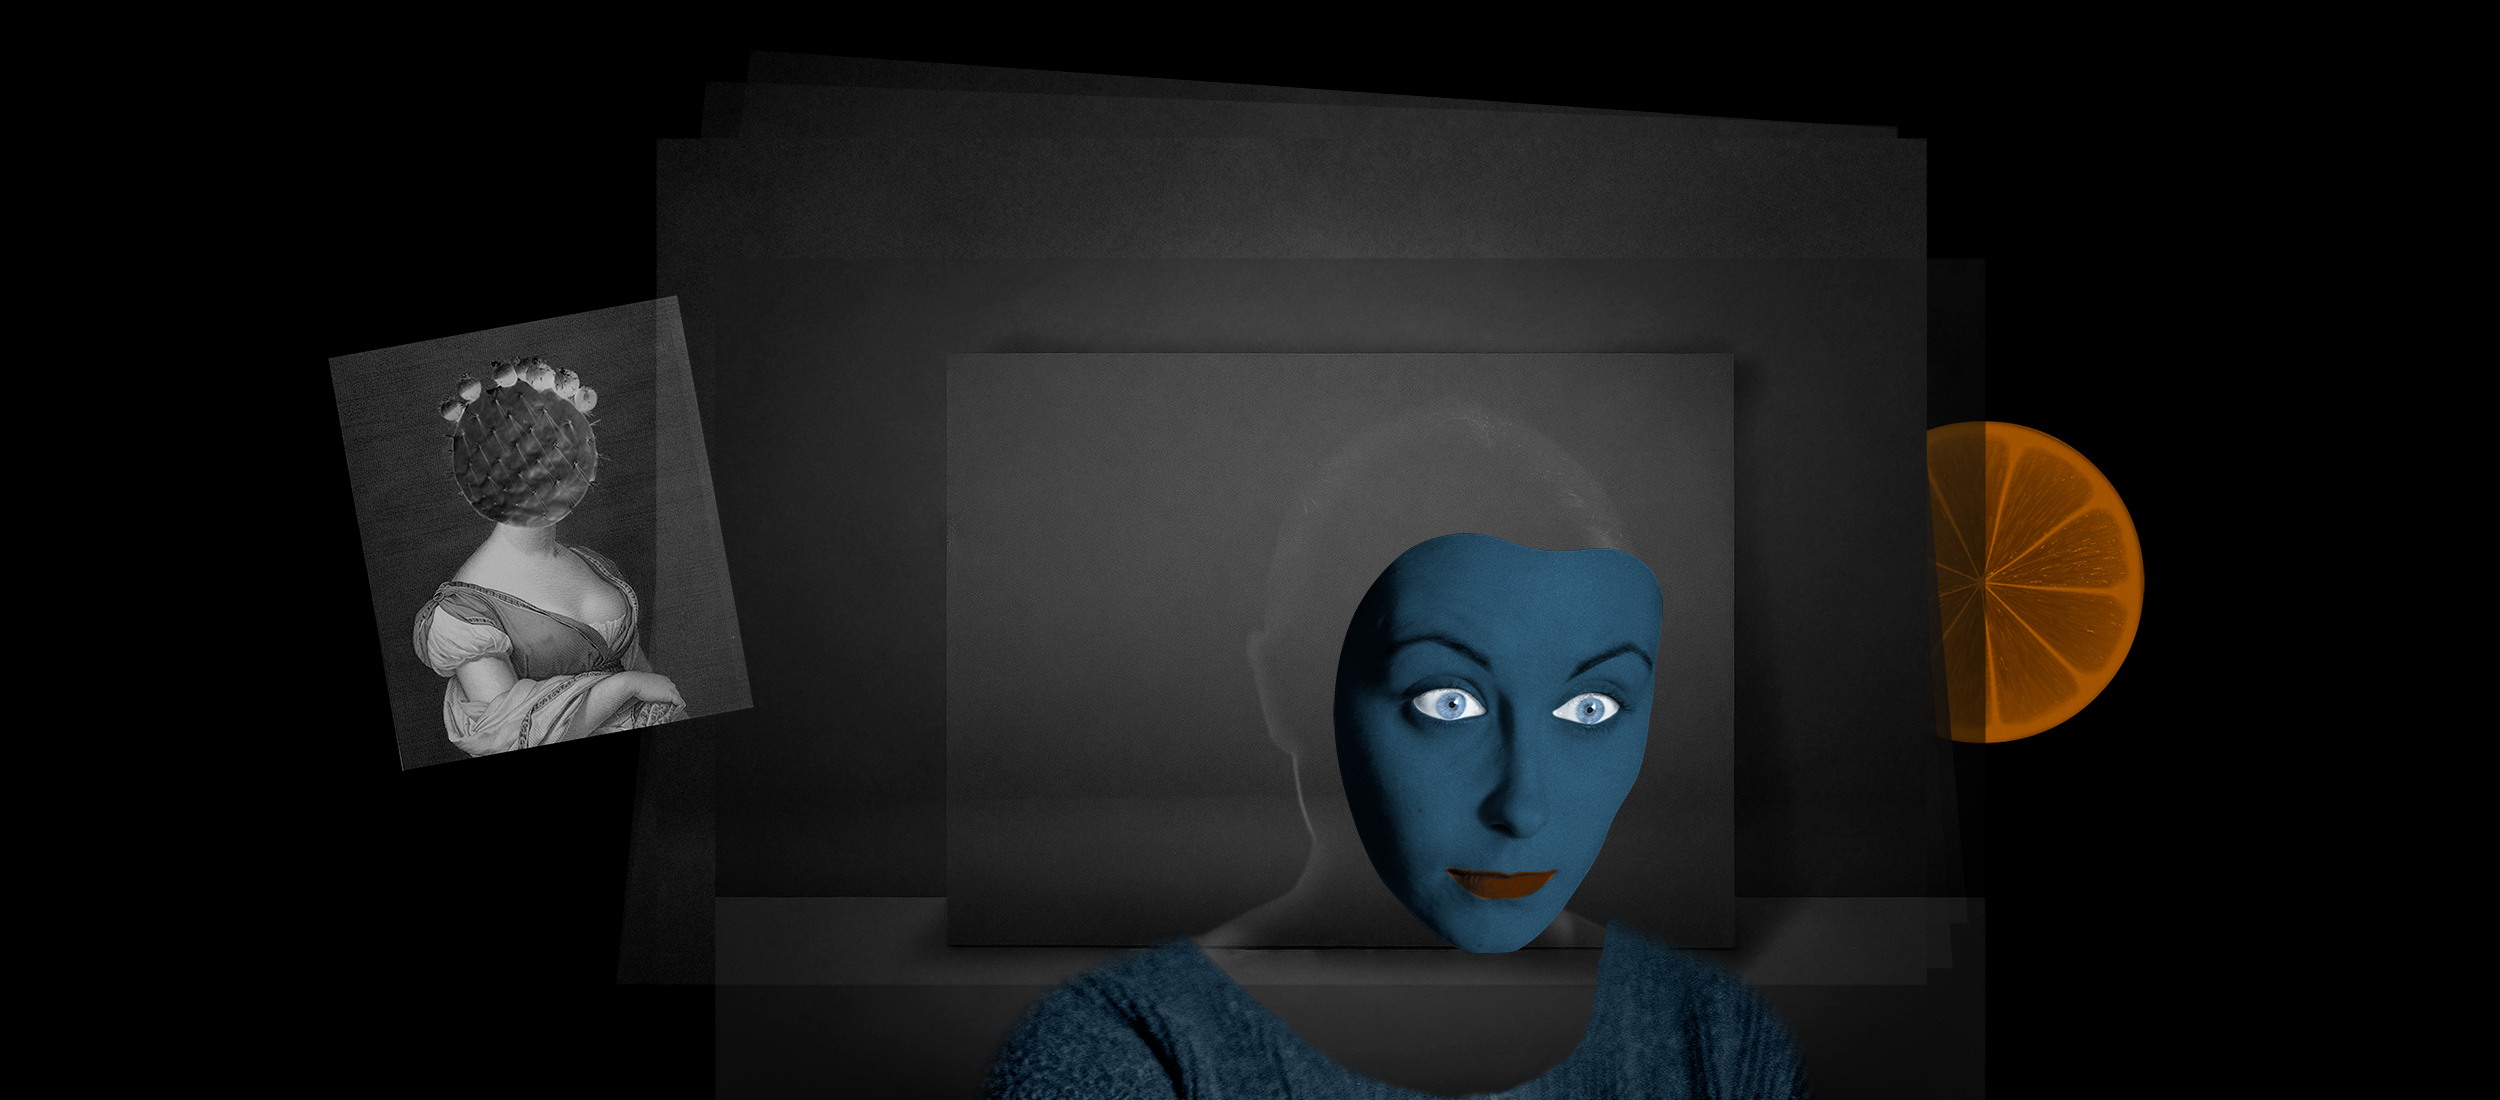 Art Digital, Collage de photos d'un masque bleu, d'une silhouette, d'une reine avec une tête de cactus, une orange sur des fonds noirs superposés.